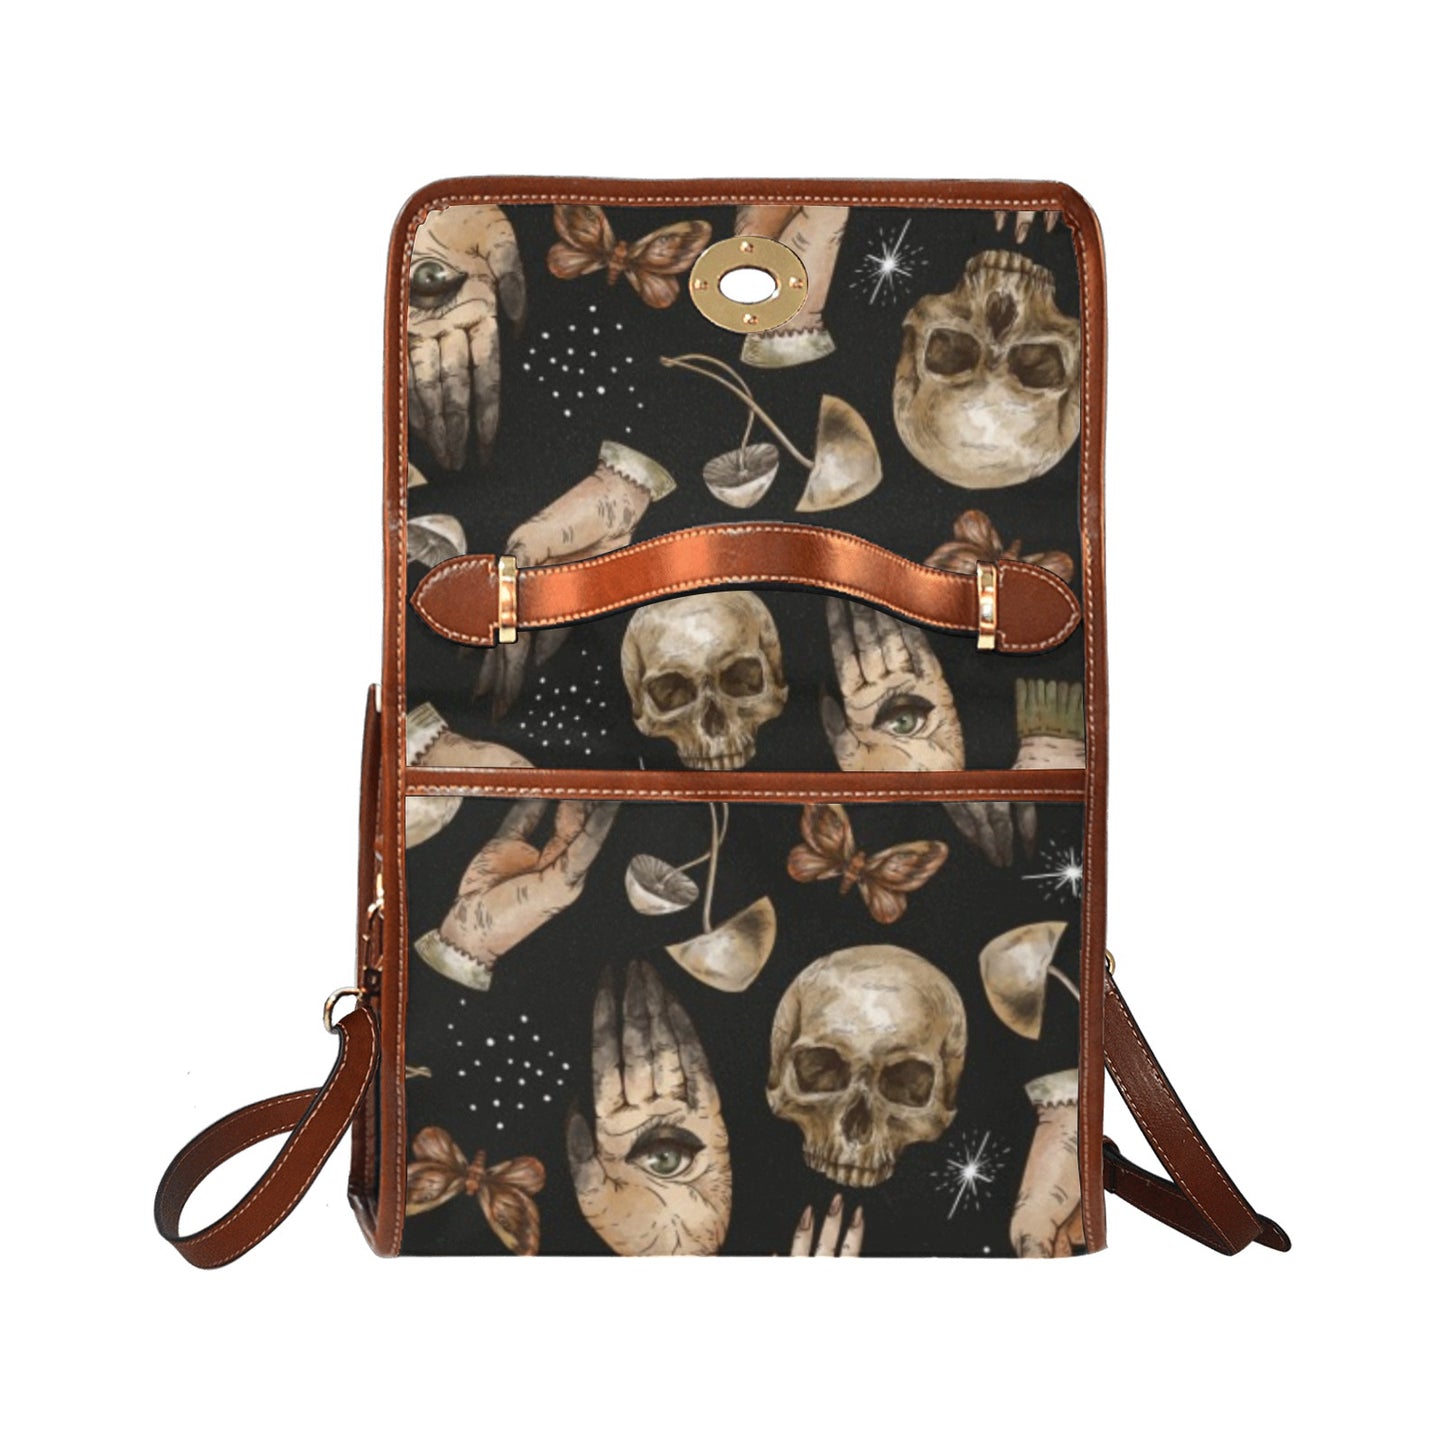 Skull Hands mushroom witchcraft satchel bag